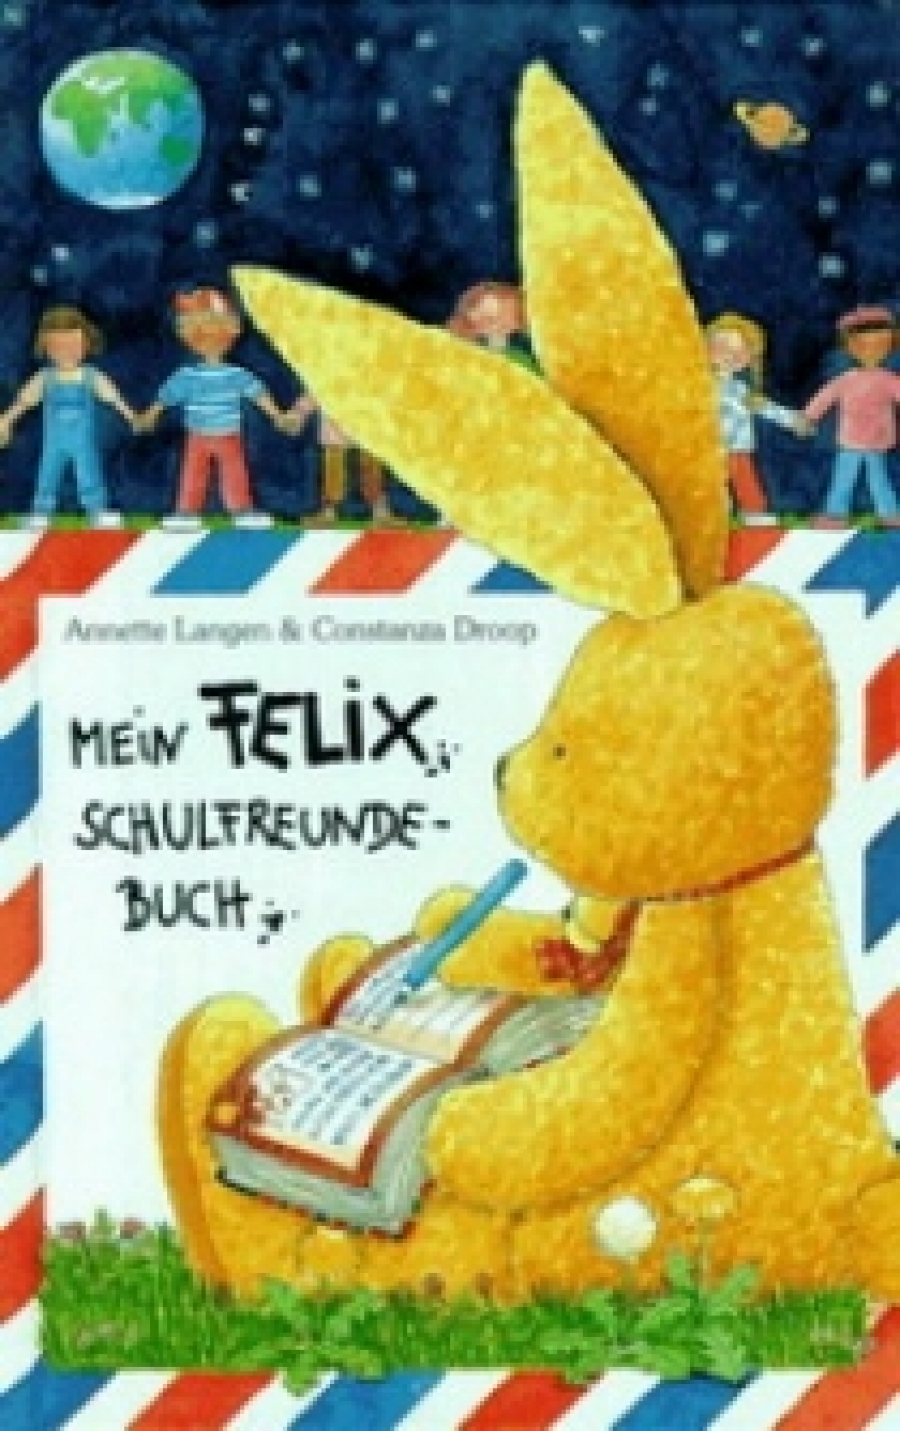 Annette L. Mein Felix Schulfreunde - Buch mit Geburtstagskalender 